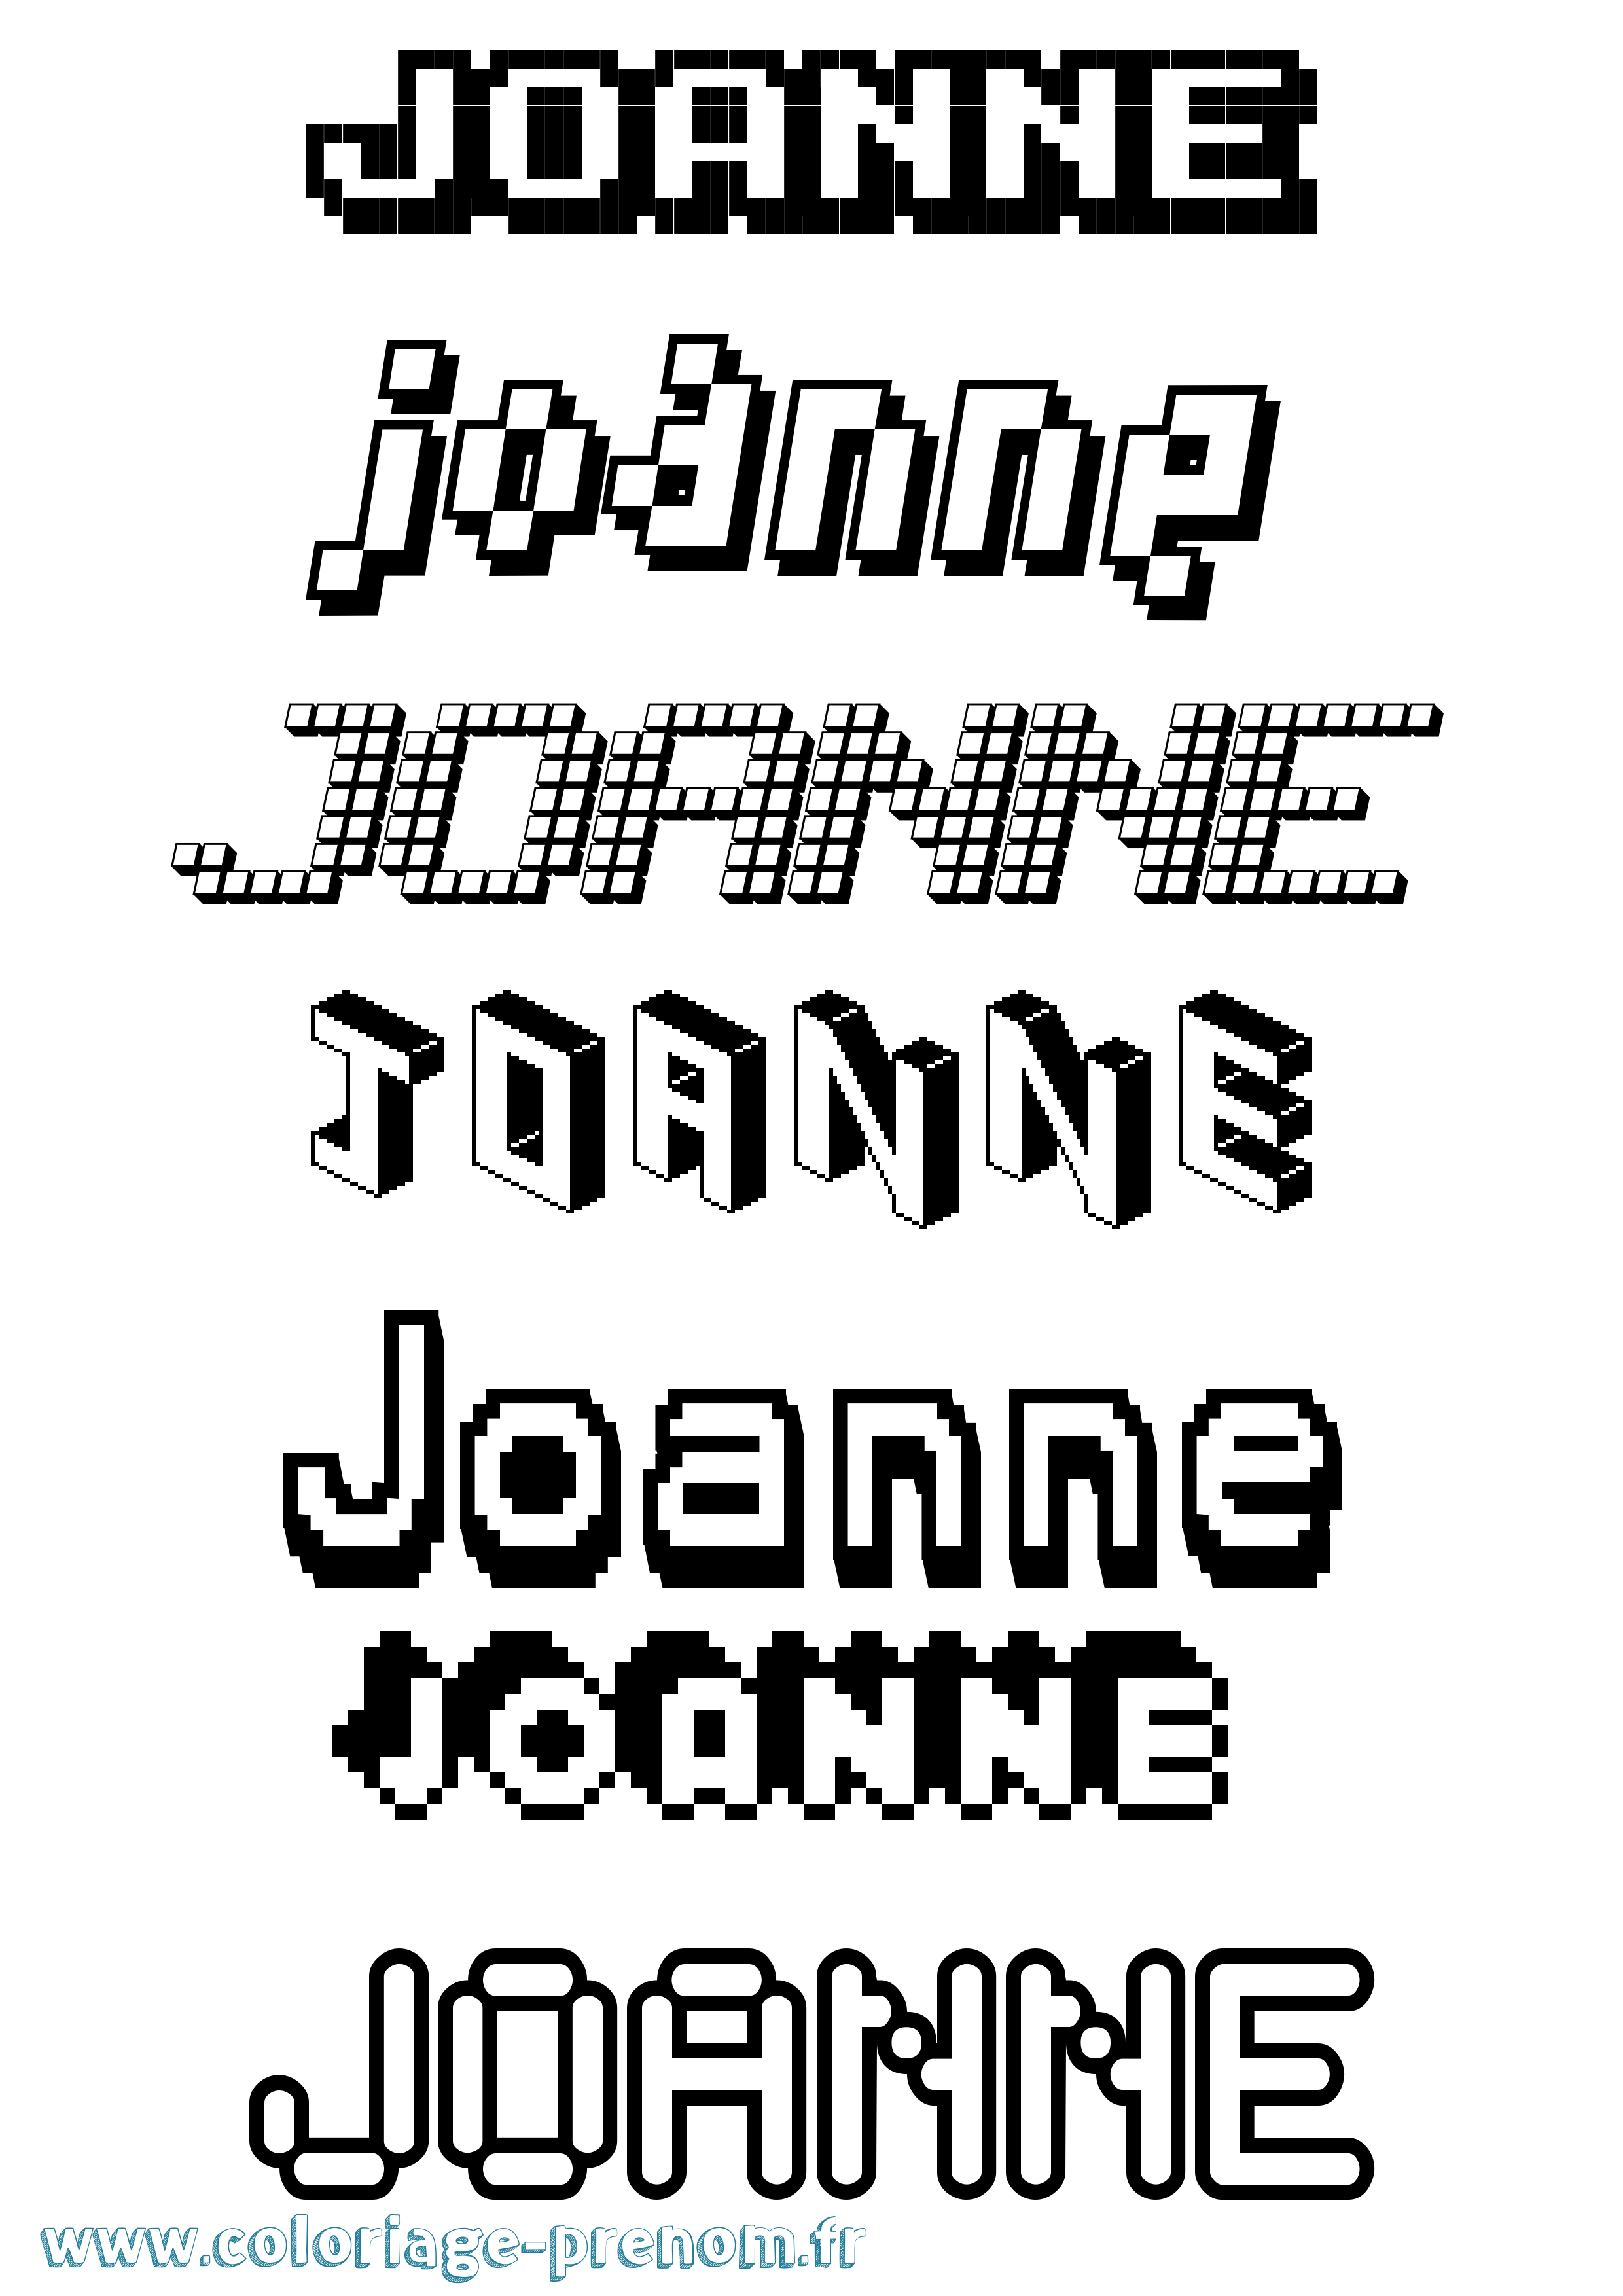 Coloriage prénom Joanne